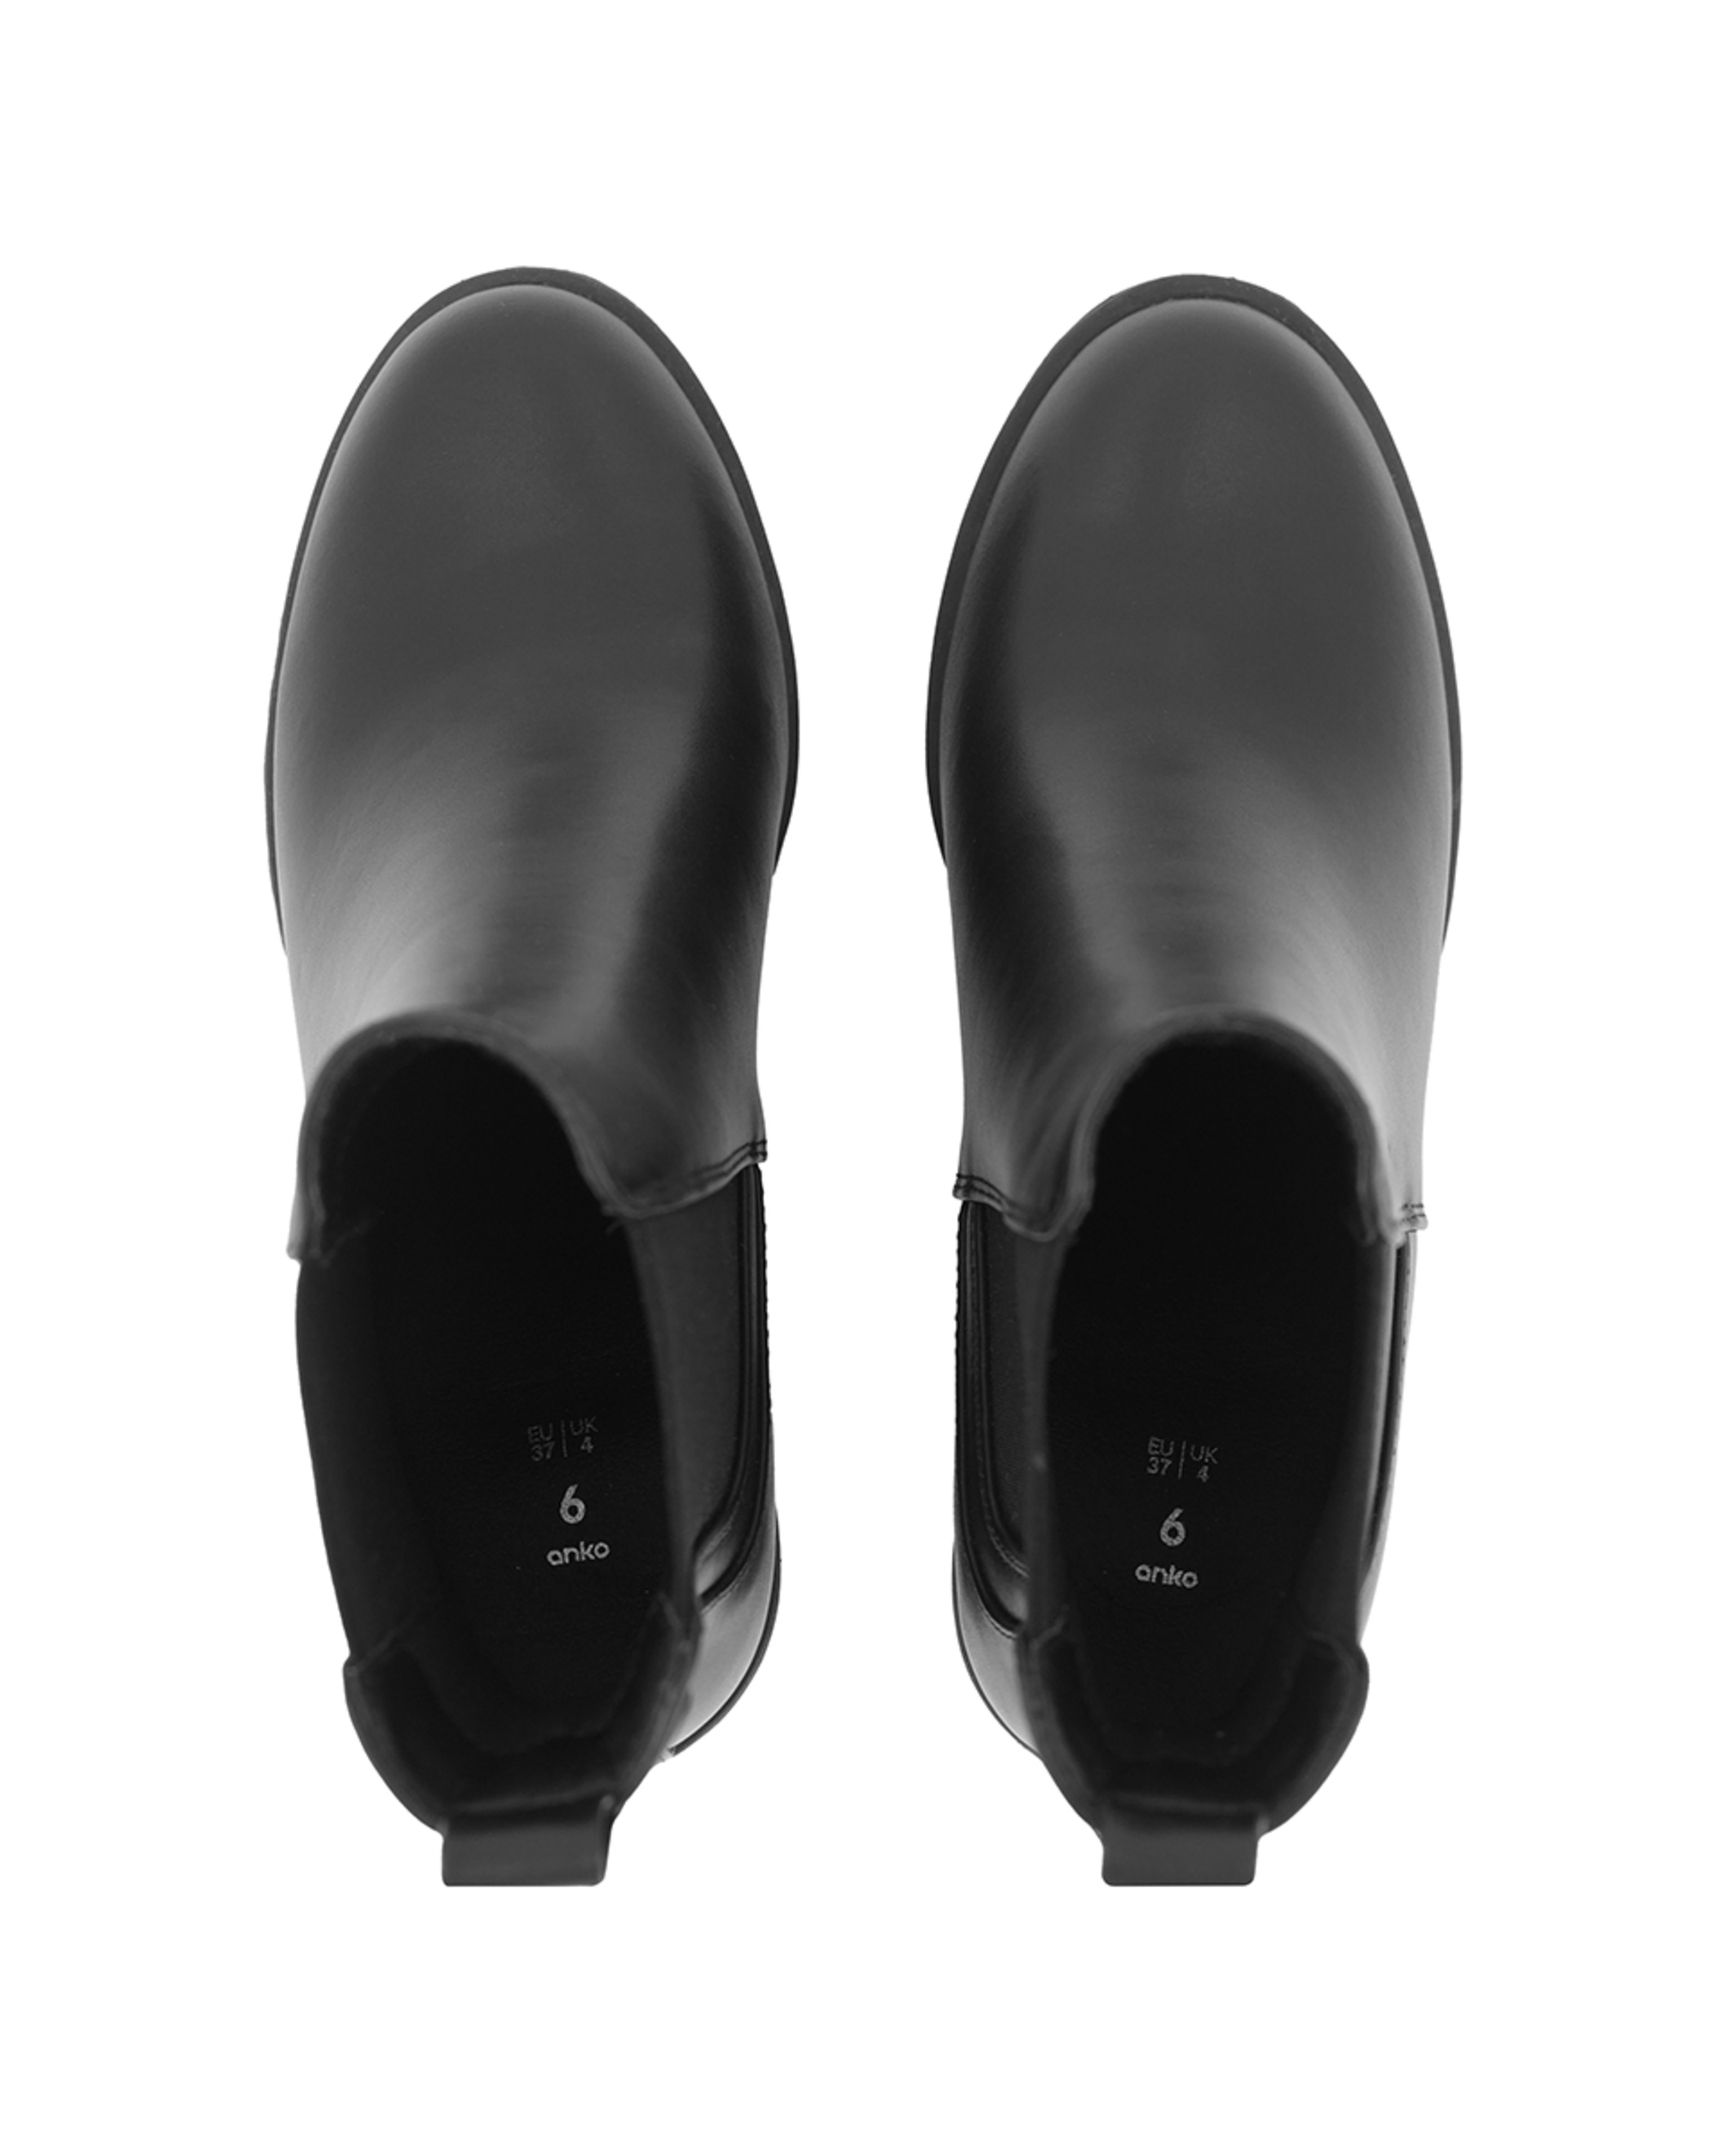 Gusset High Heel Boots - Kmart